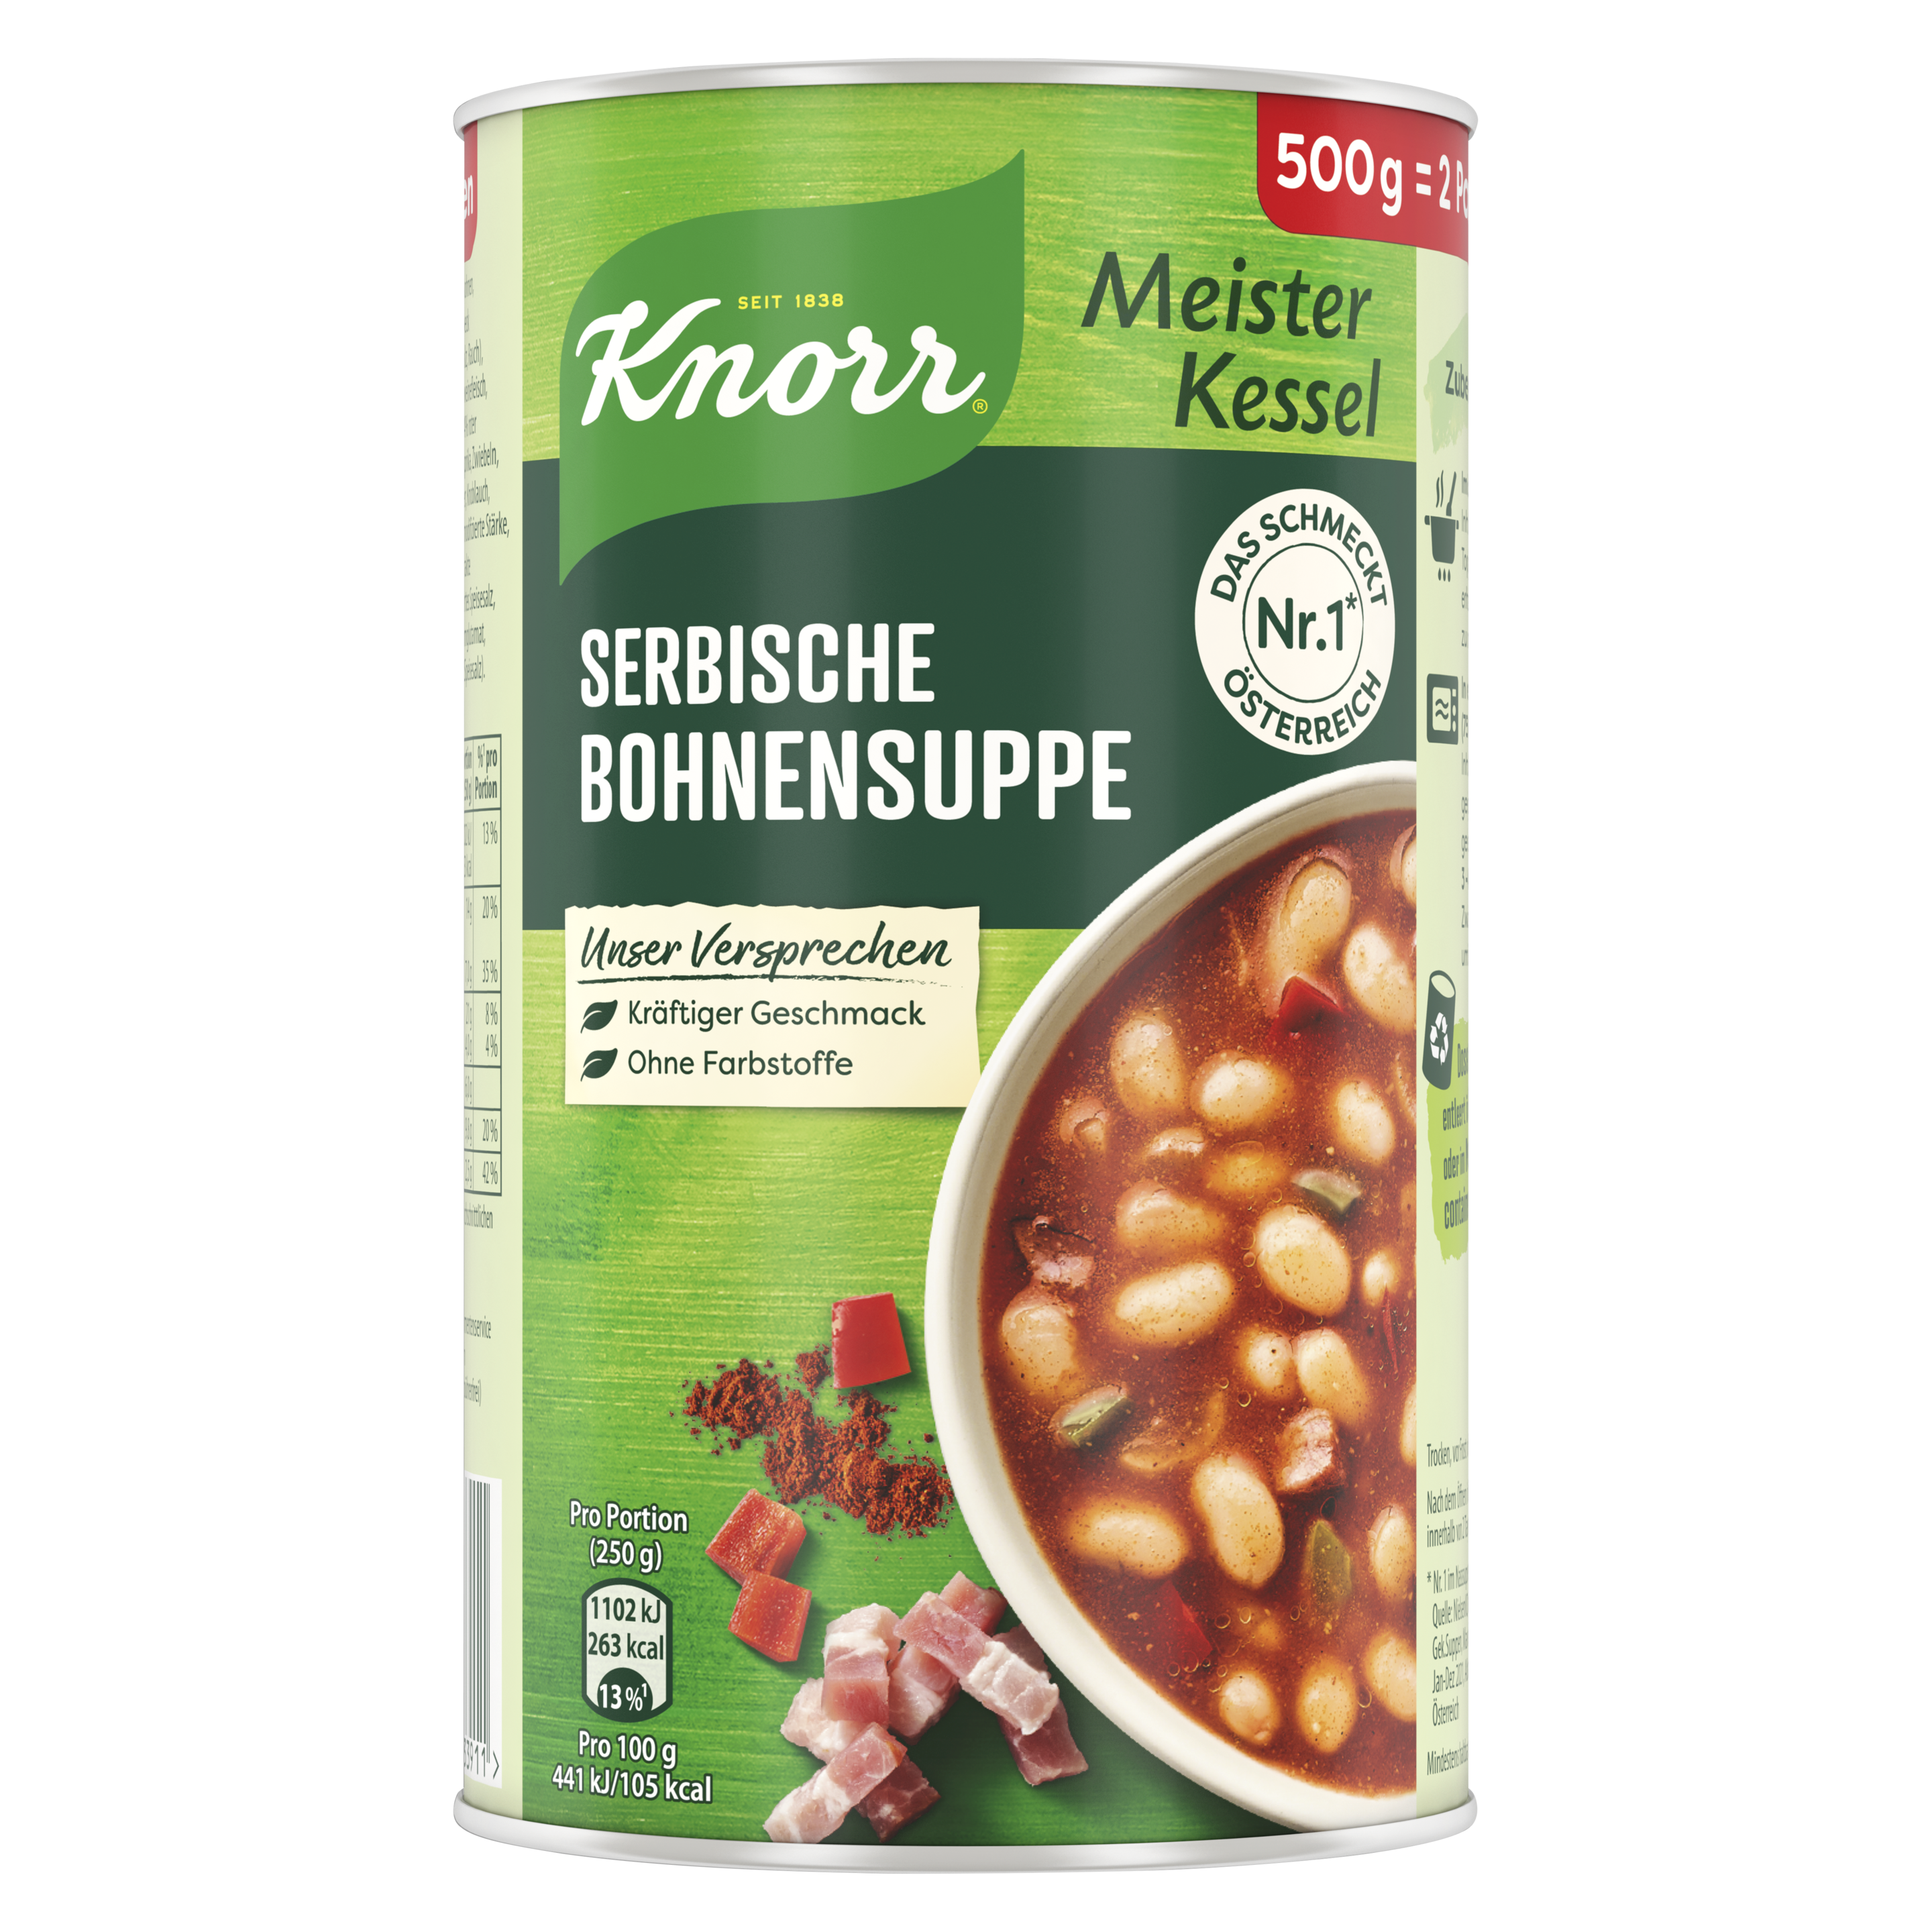 Knorr Meisterkessel Serbische Bohnen Suppe 2 Teller